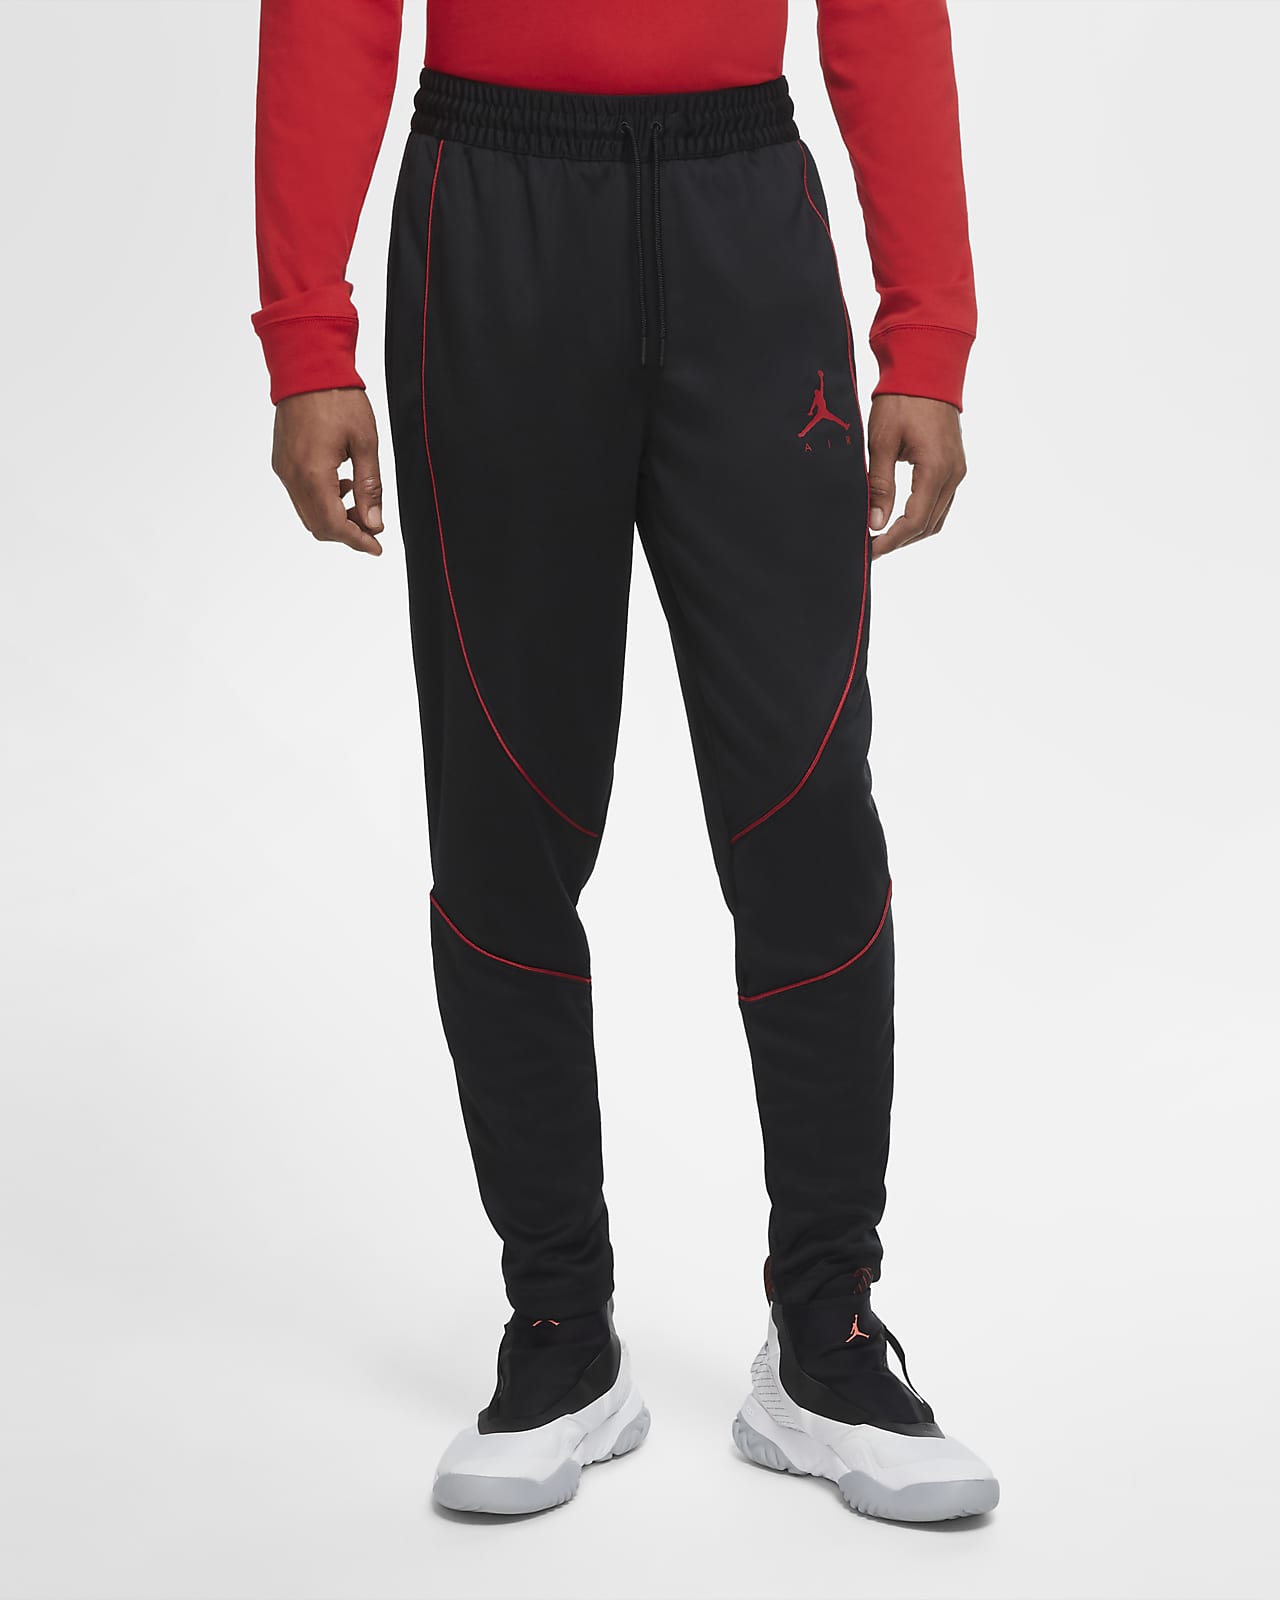 Pantalones para hombre Jordan Jumpman Air. Nike.com